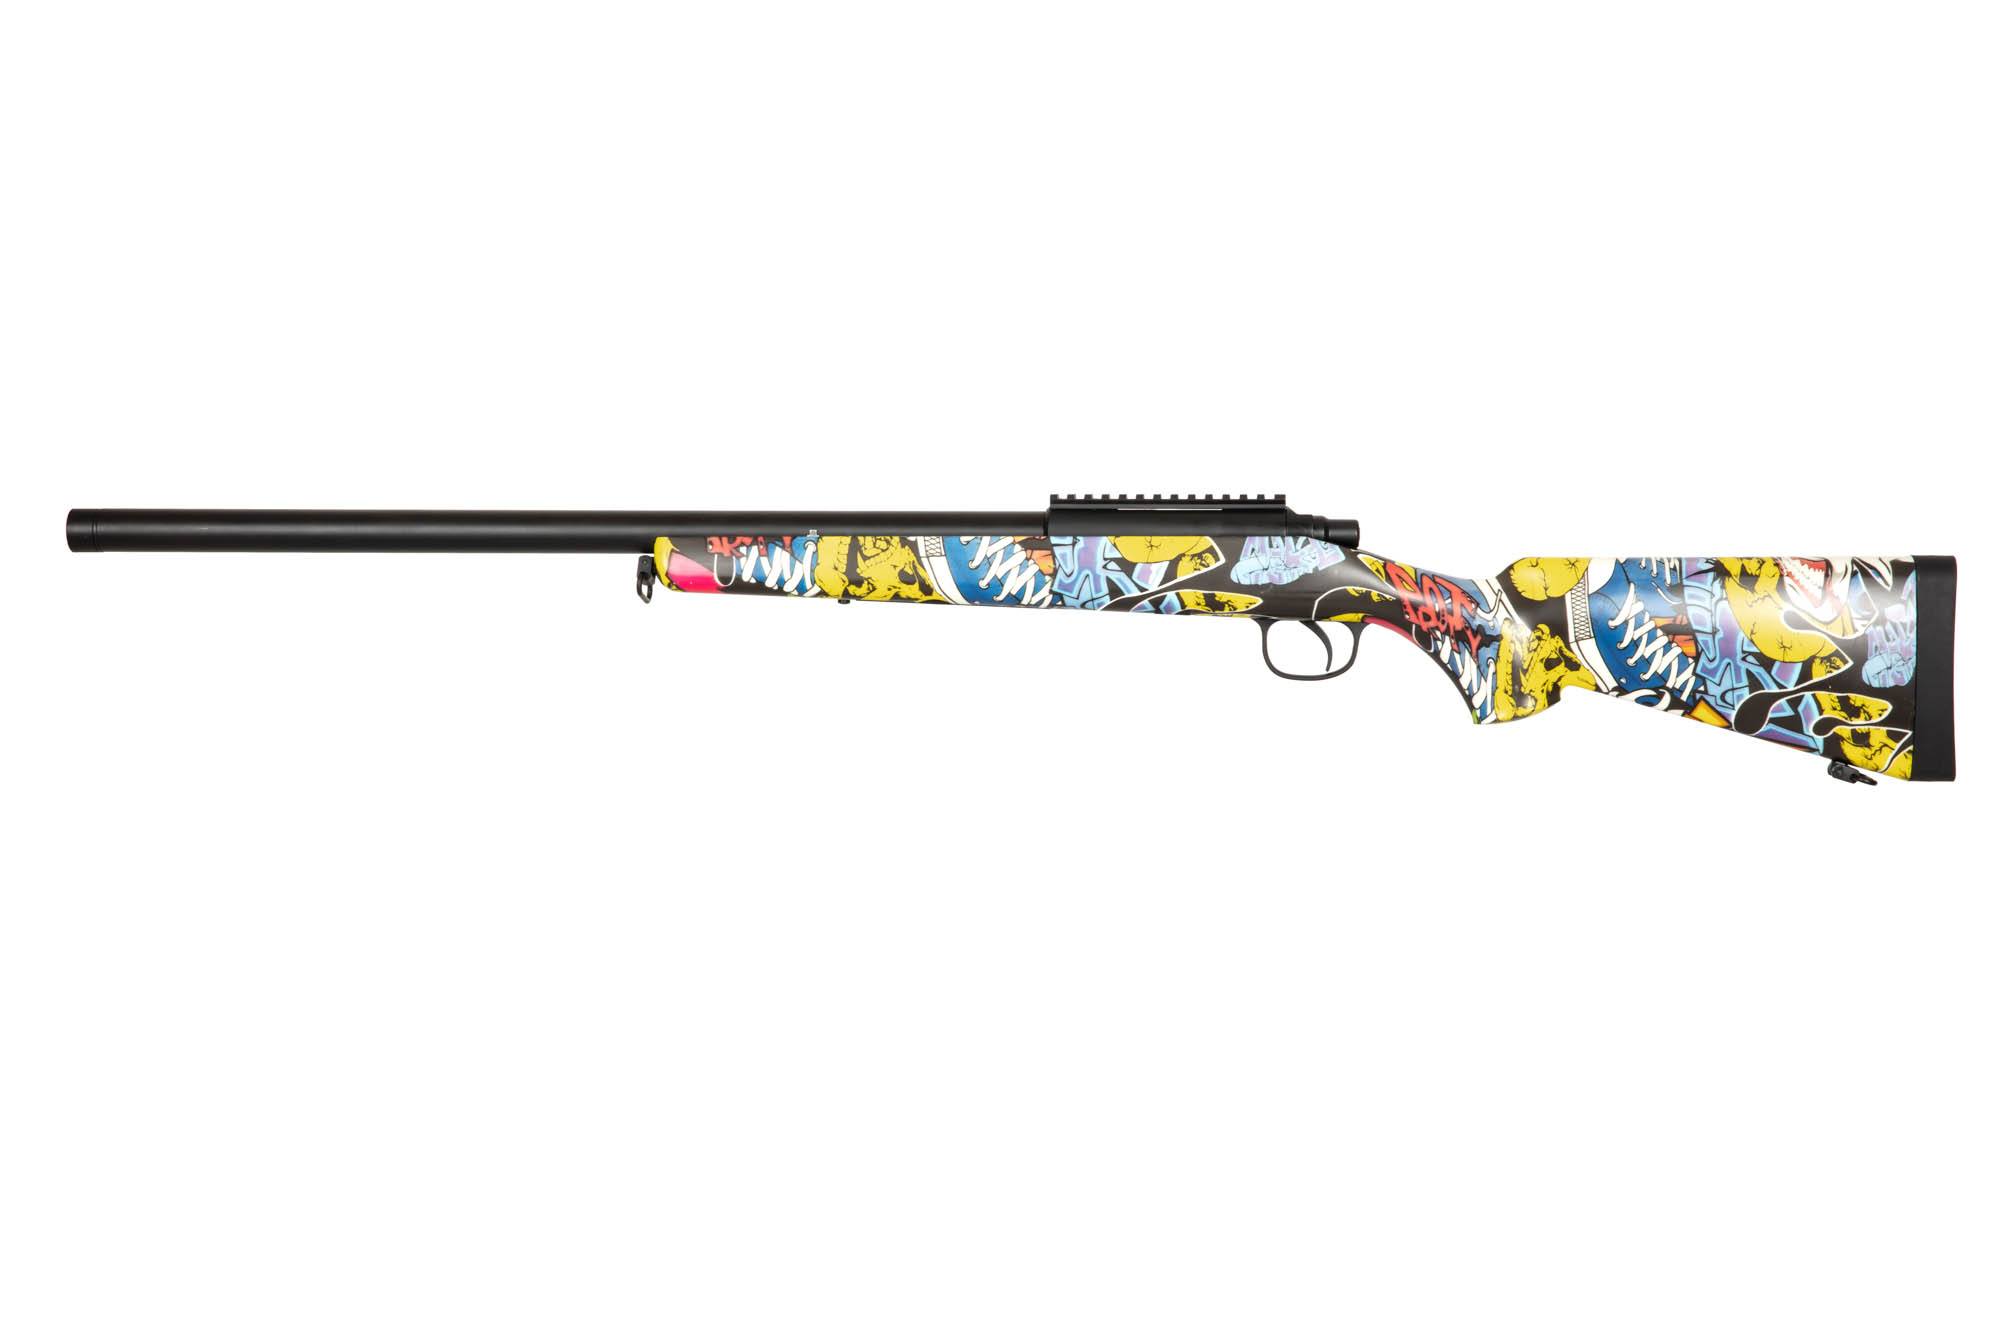 210 sniper rifle replica - Graffiti Camo